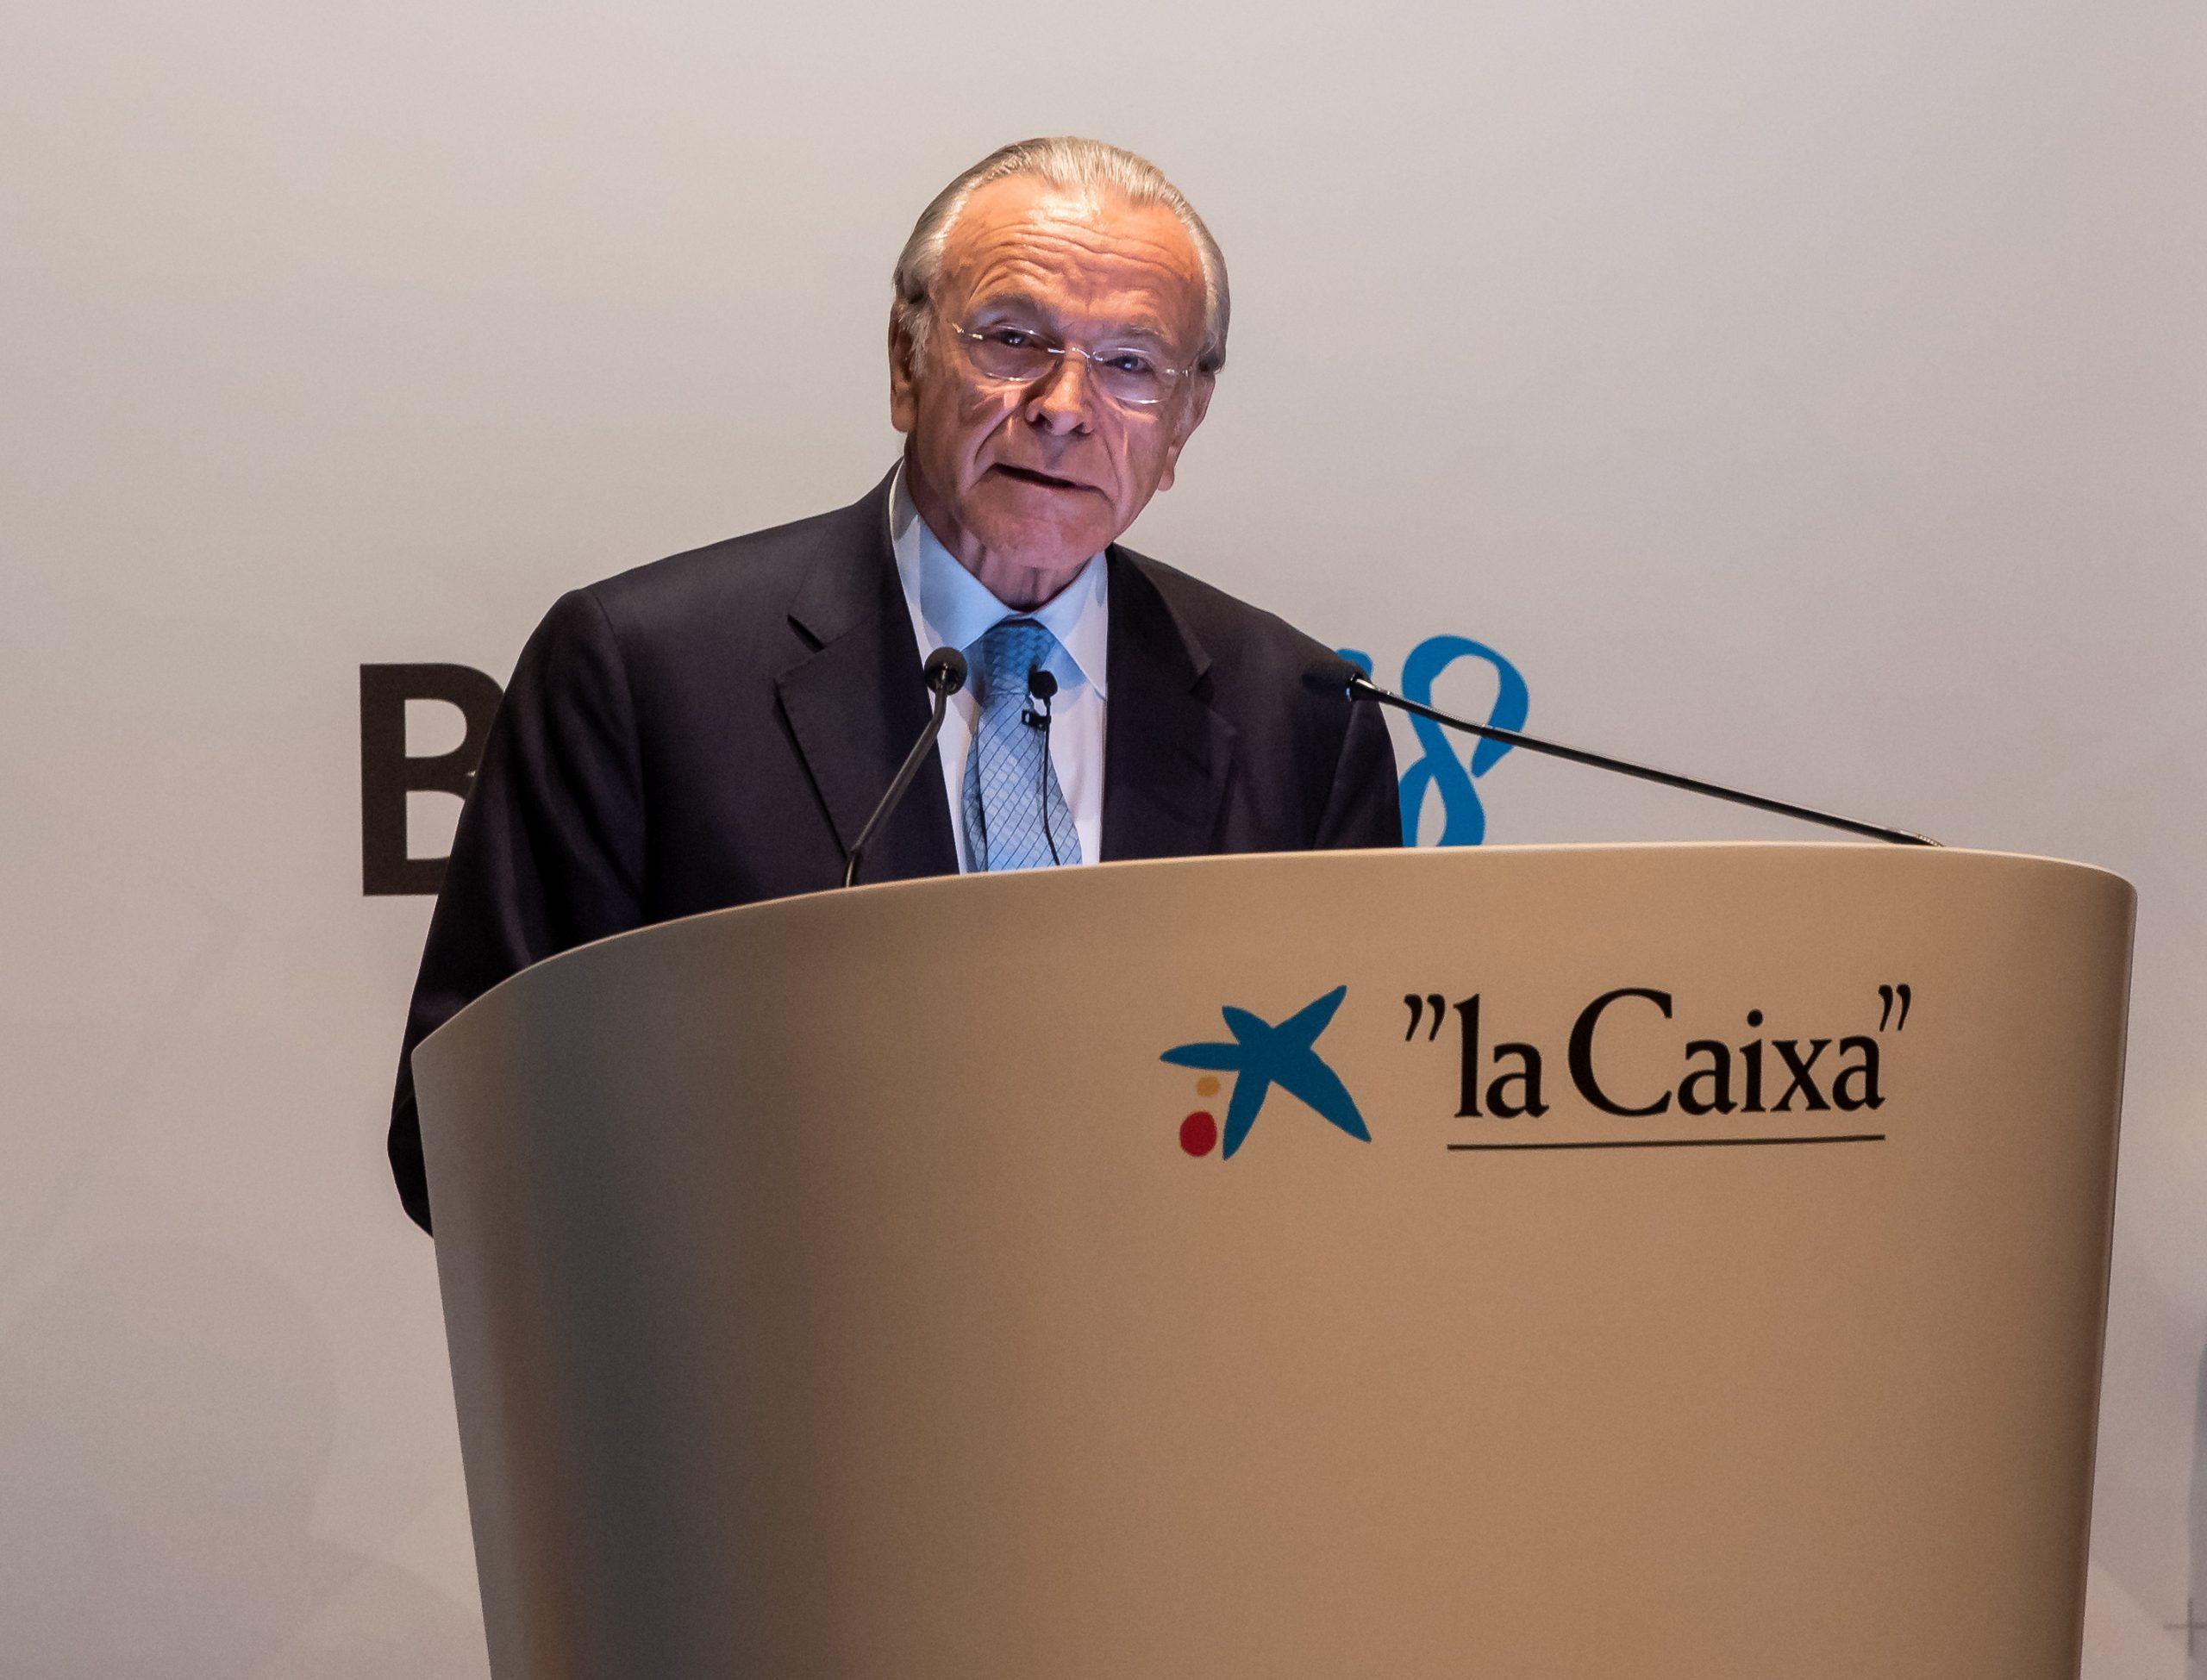 Isidro Fainé, presidente de la Fundación Bancaria ”la Caixa”, en el momento de la inauguración